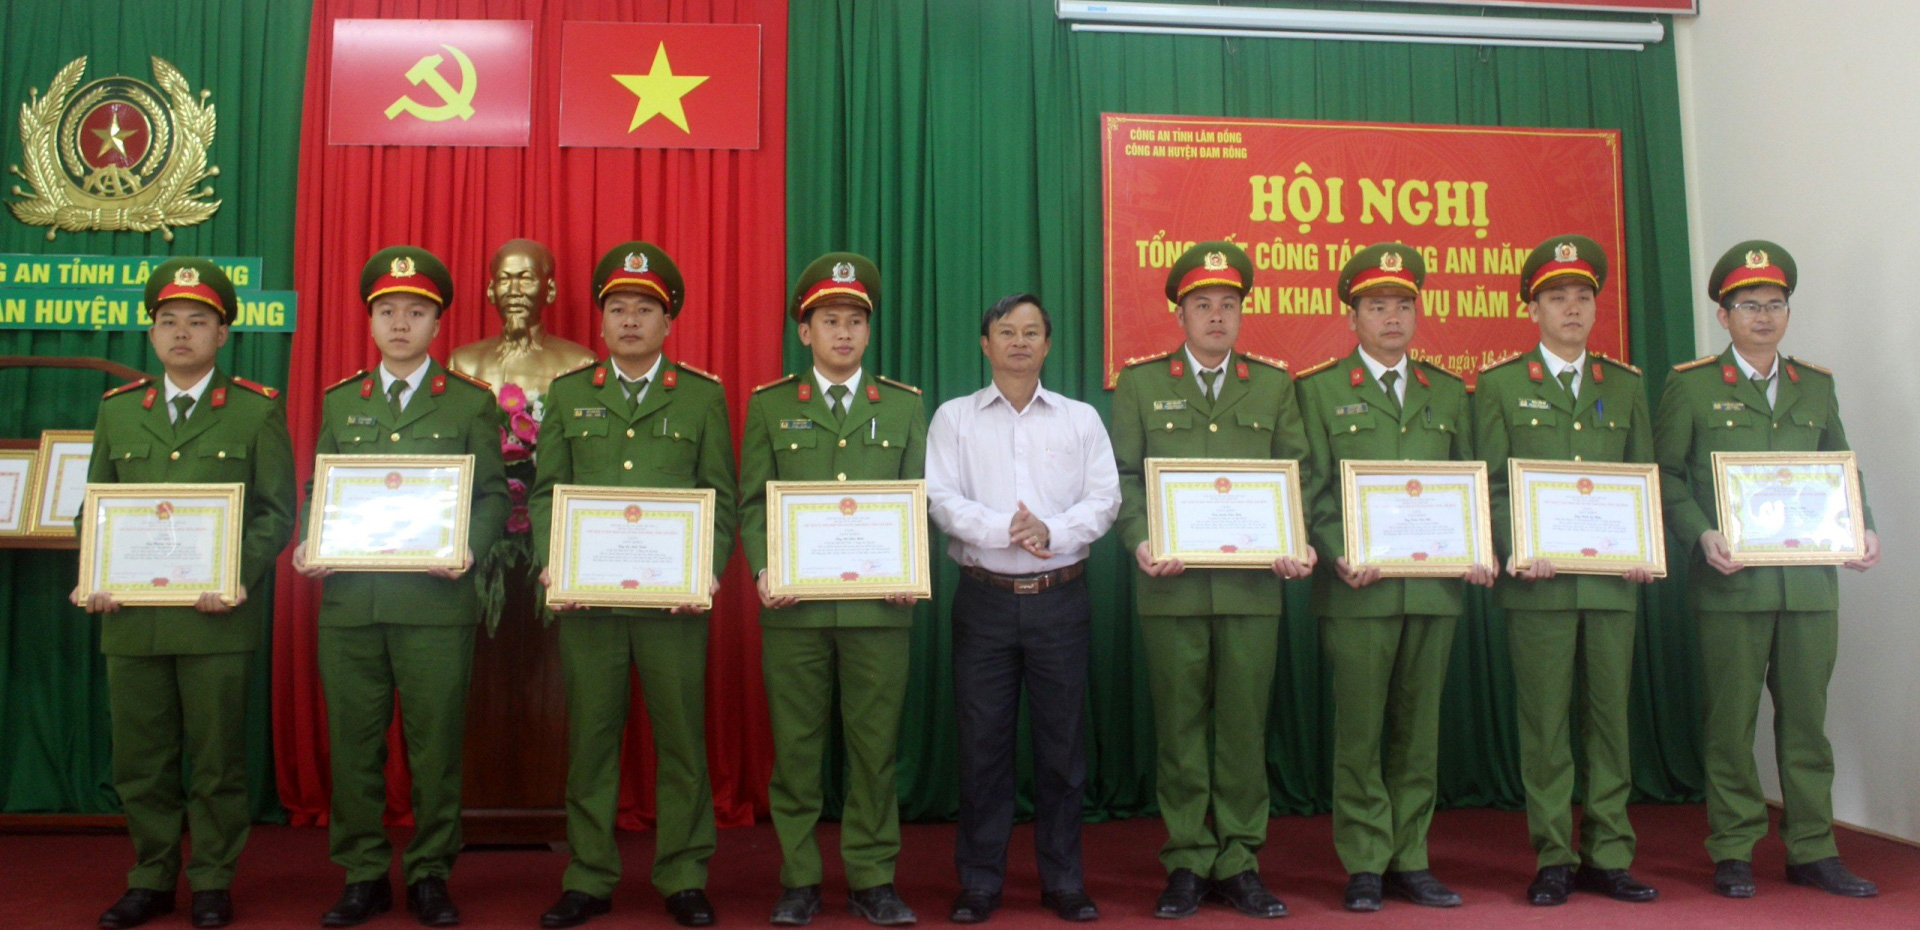 Đồng chí Trương Hữu Đồng - Chủ tịch UBND huyện Đam Rông tặng giấy khen của UBND huyện cho các tập thể và cá nhân có thành tích trong đợt cao điểm tấn công, trấn áp tội phạm